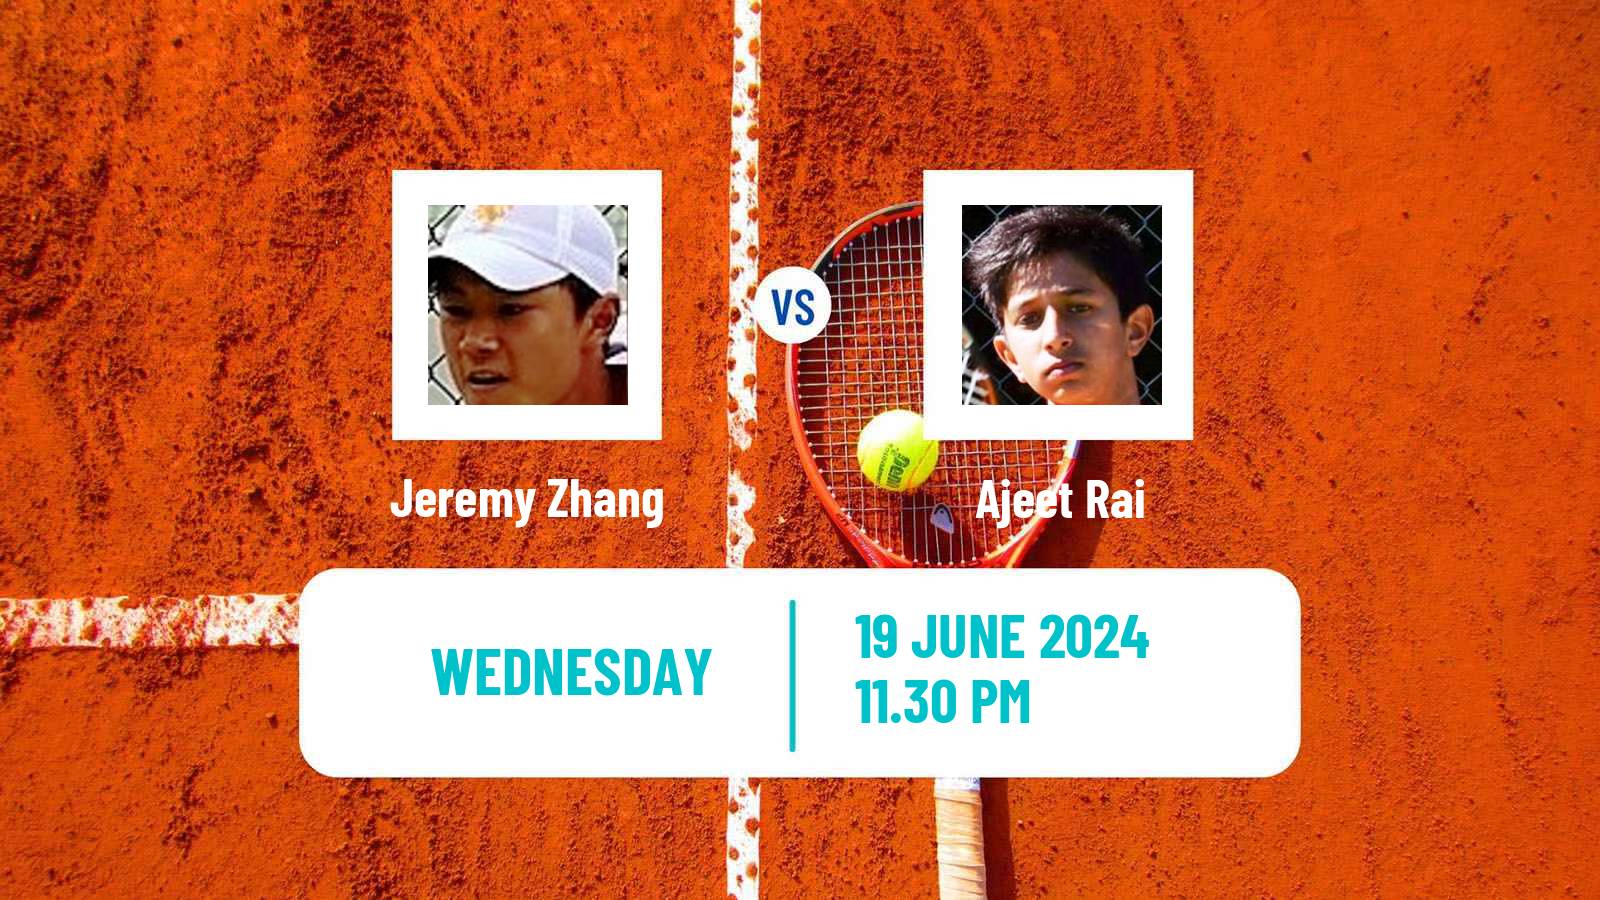 Tennis ITF M15 Hong Kong 2 Men Jeremy Zhang - Ajeet Rai